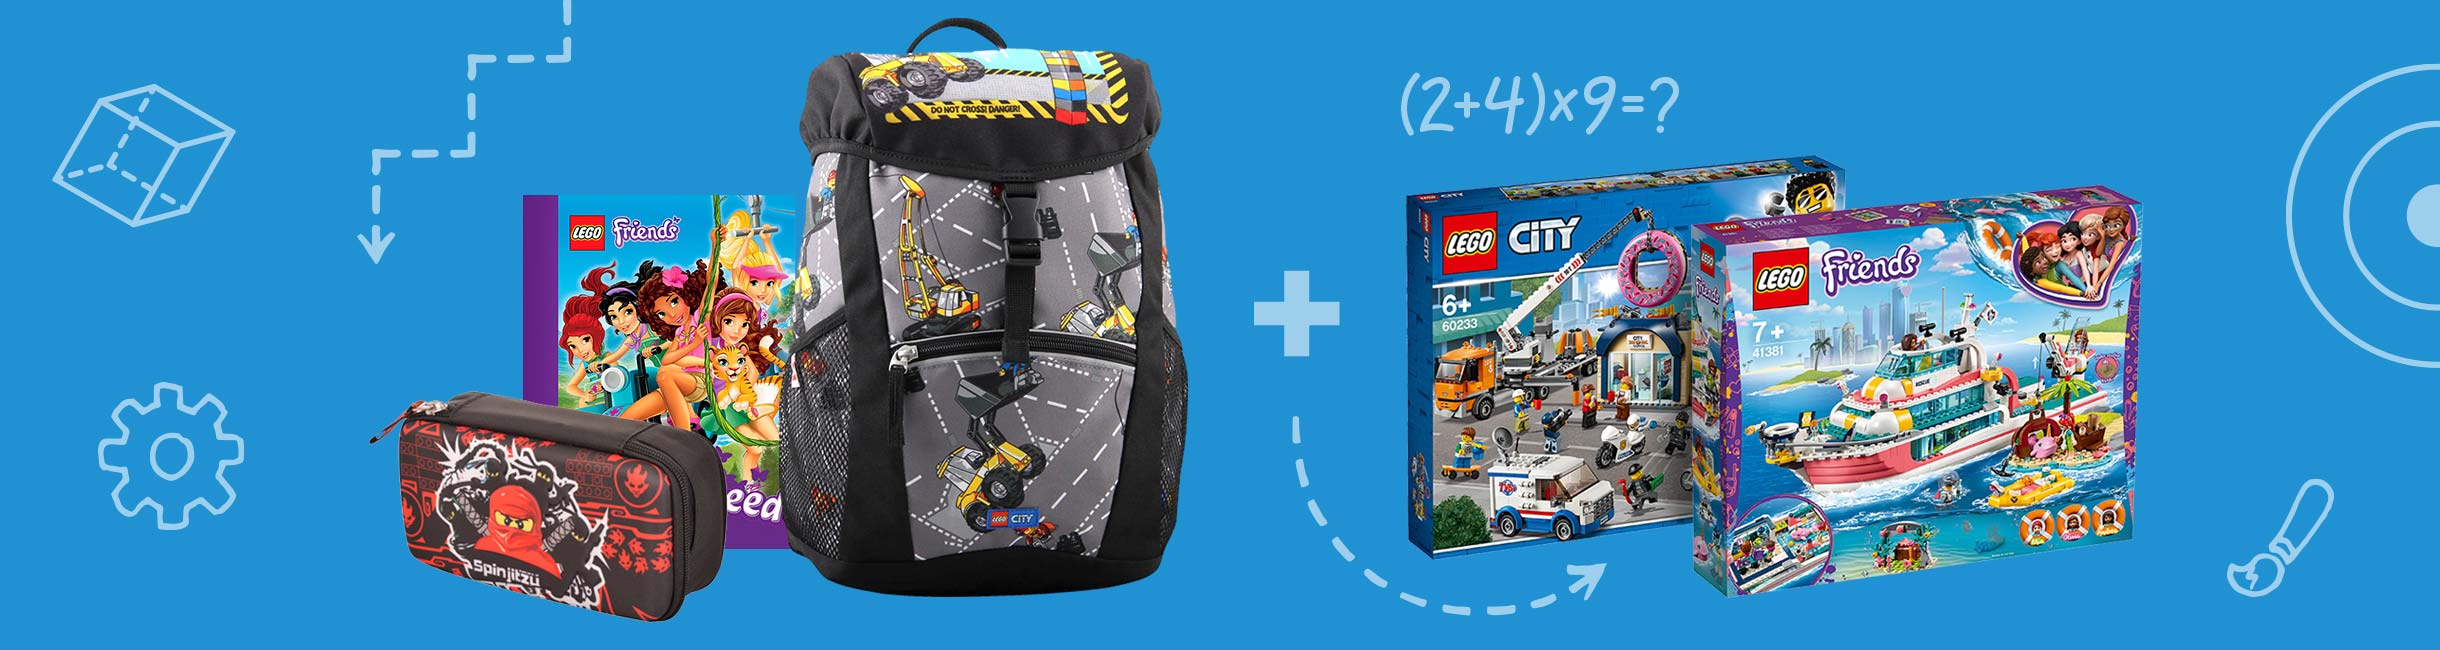 Рекламная акция Лего (LEGO) «-20% нашим школьным друзьям!»